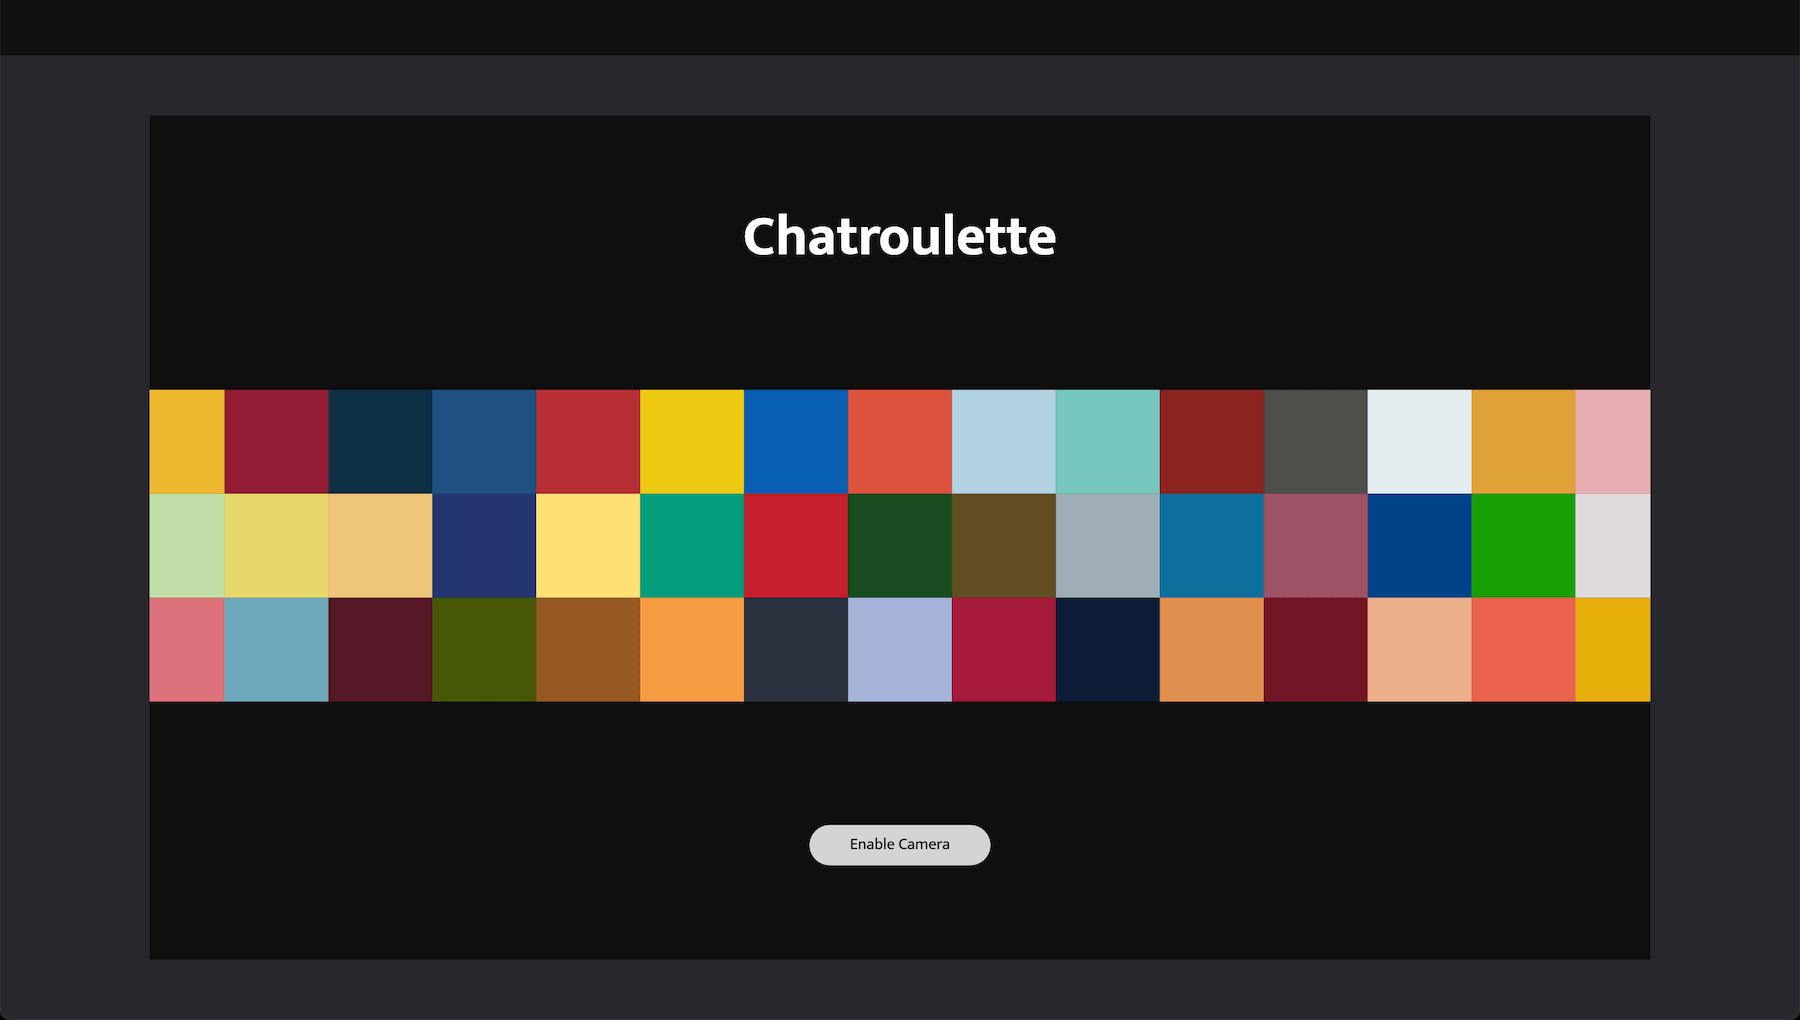 Chatruolette